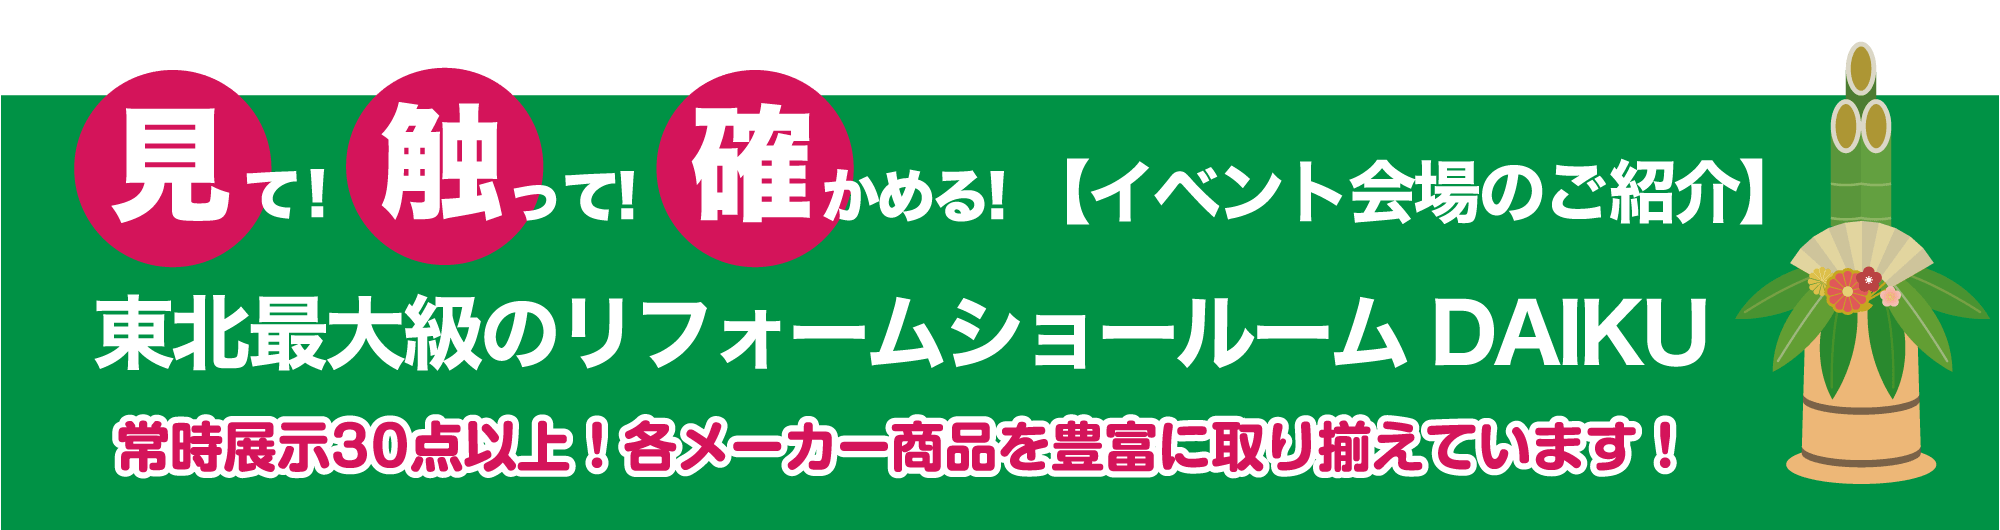 仙台のリフォーム専門店 ダイクショールーム 2022年新春リフォーム初売り祭